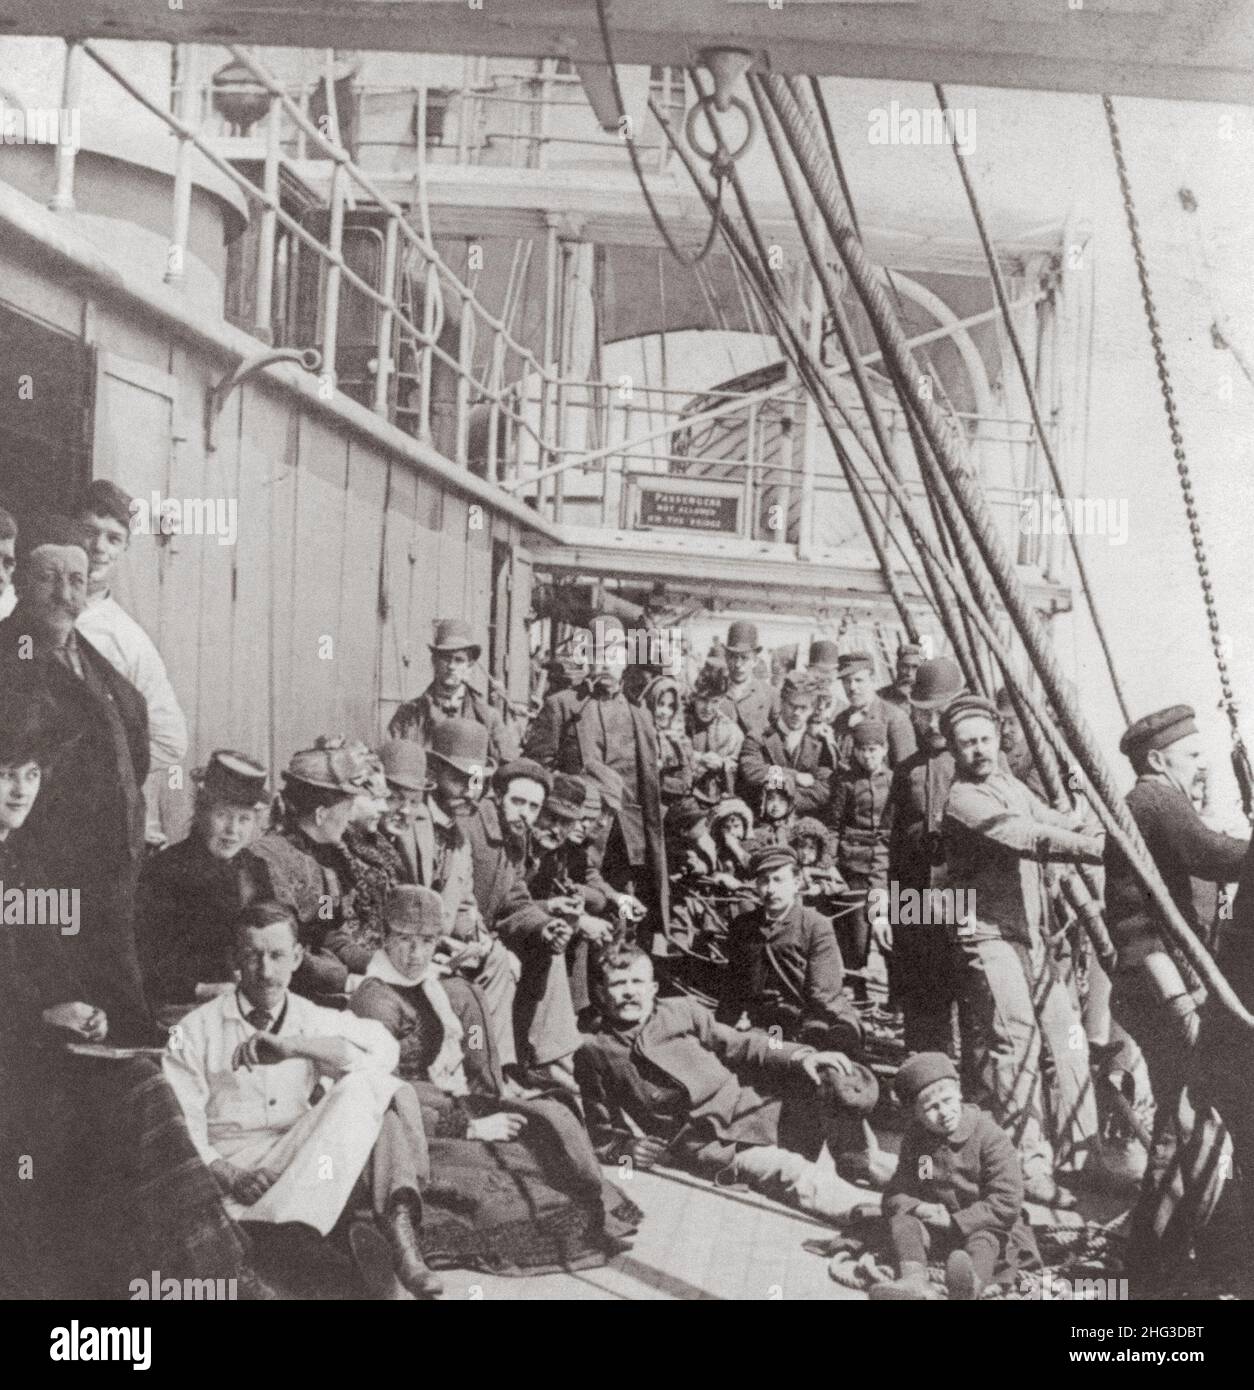 Archivfoto von Emigranten auf dem überfüllten Unterdeck eines Schiffes, mitten im Ozean. 1890 Stockfoto